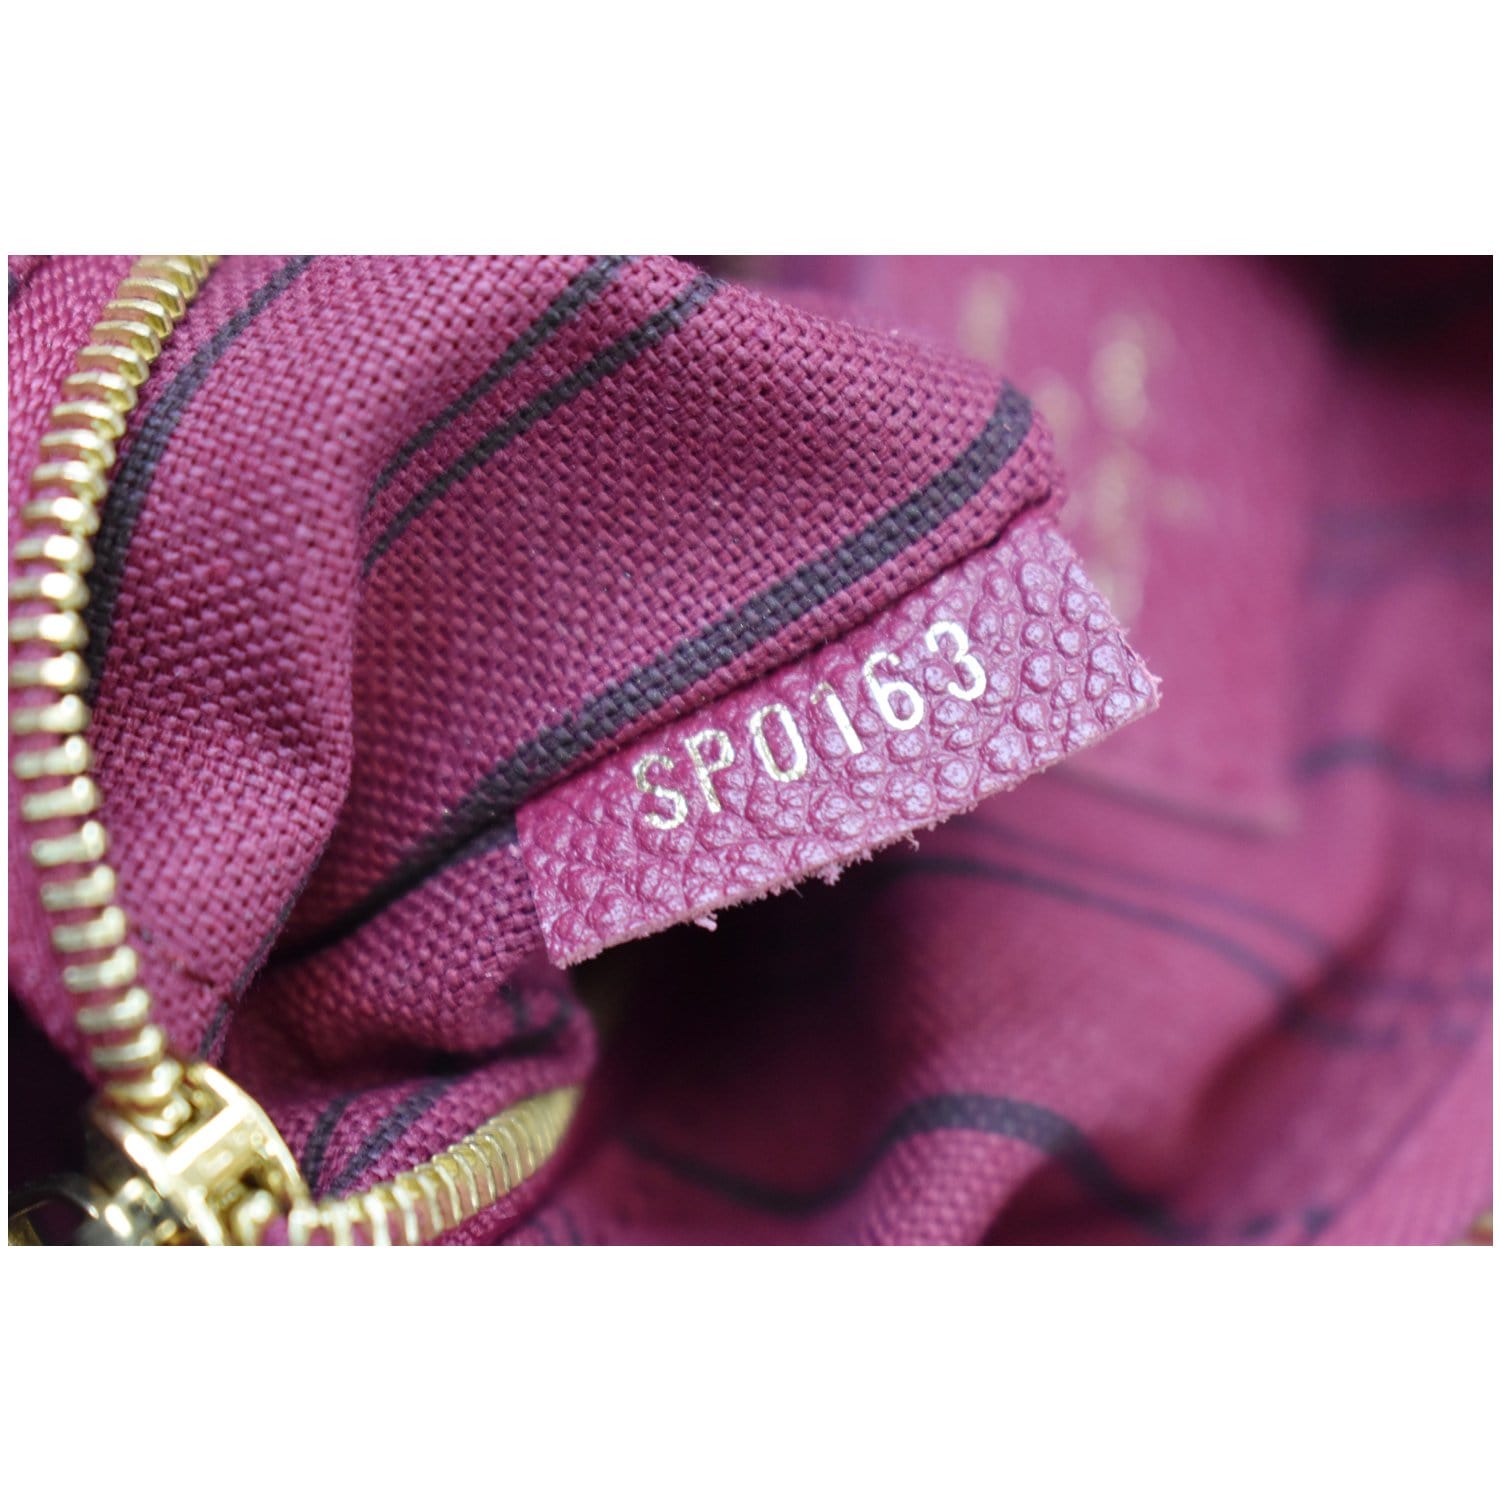 Pink Louis Vuitton Monogram Empreinte Speedy Bandouliere 25 Satchel –  Designer Revival